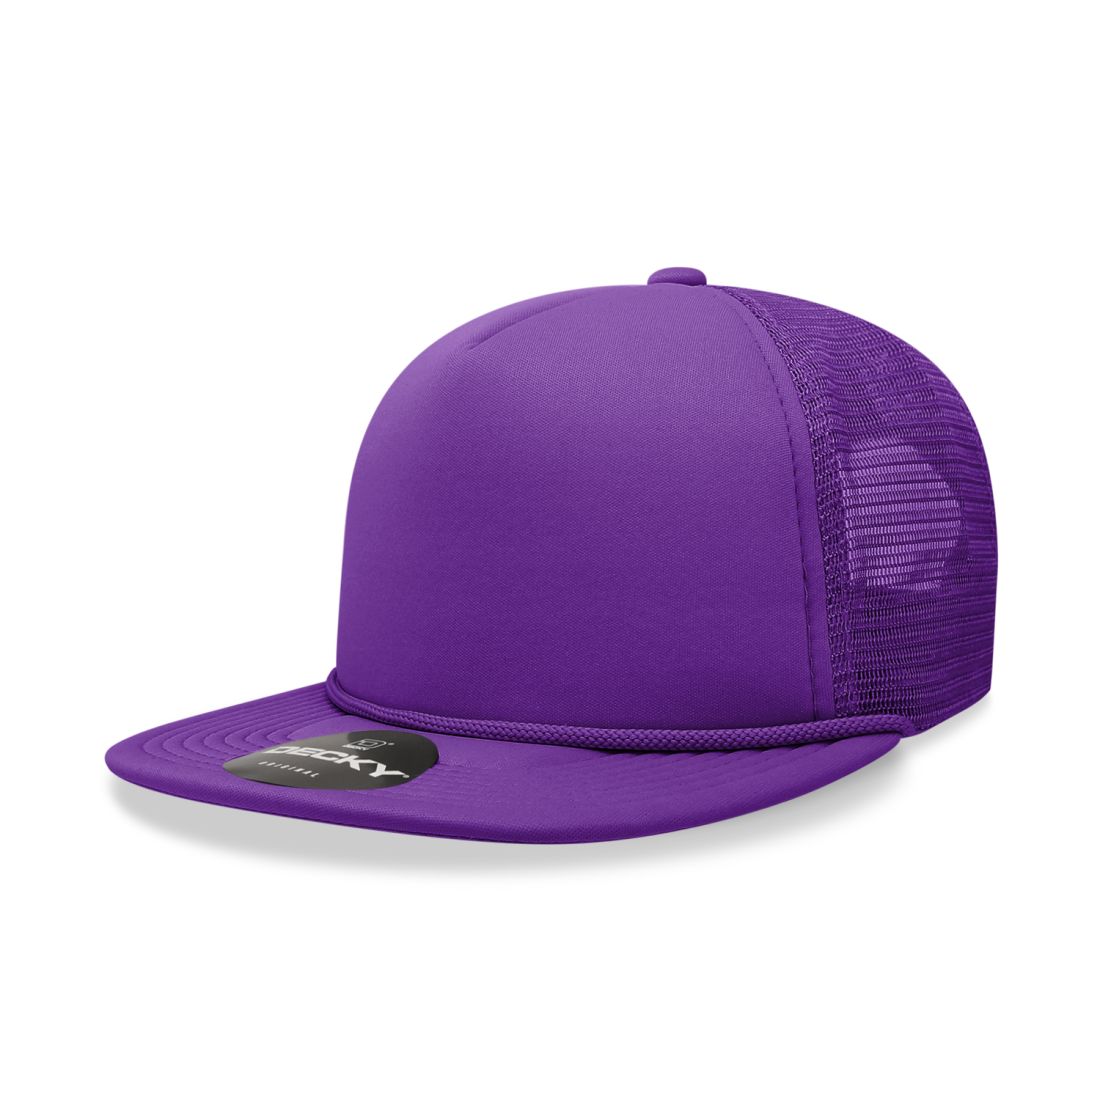 Purple color variant